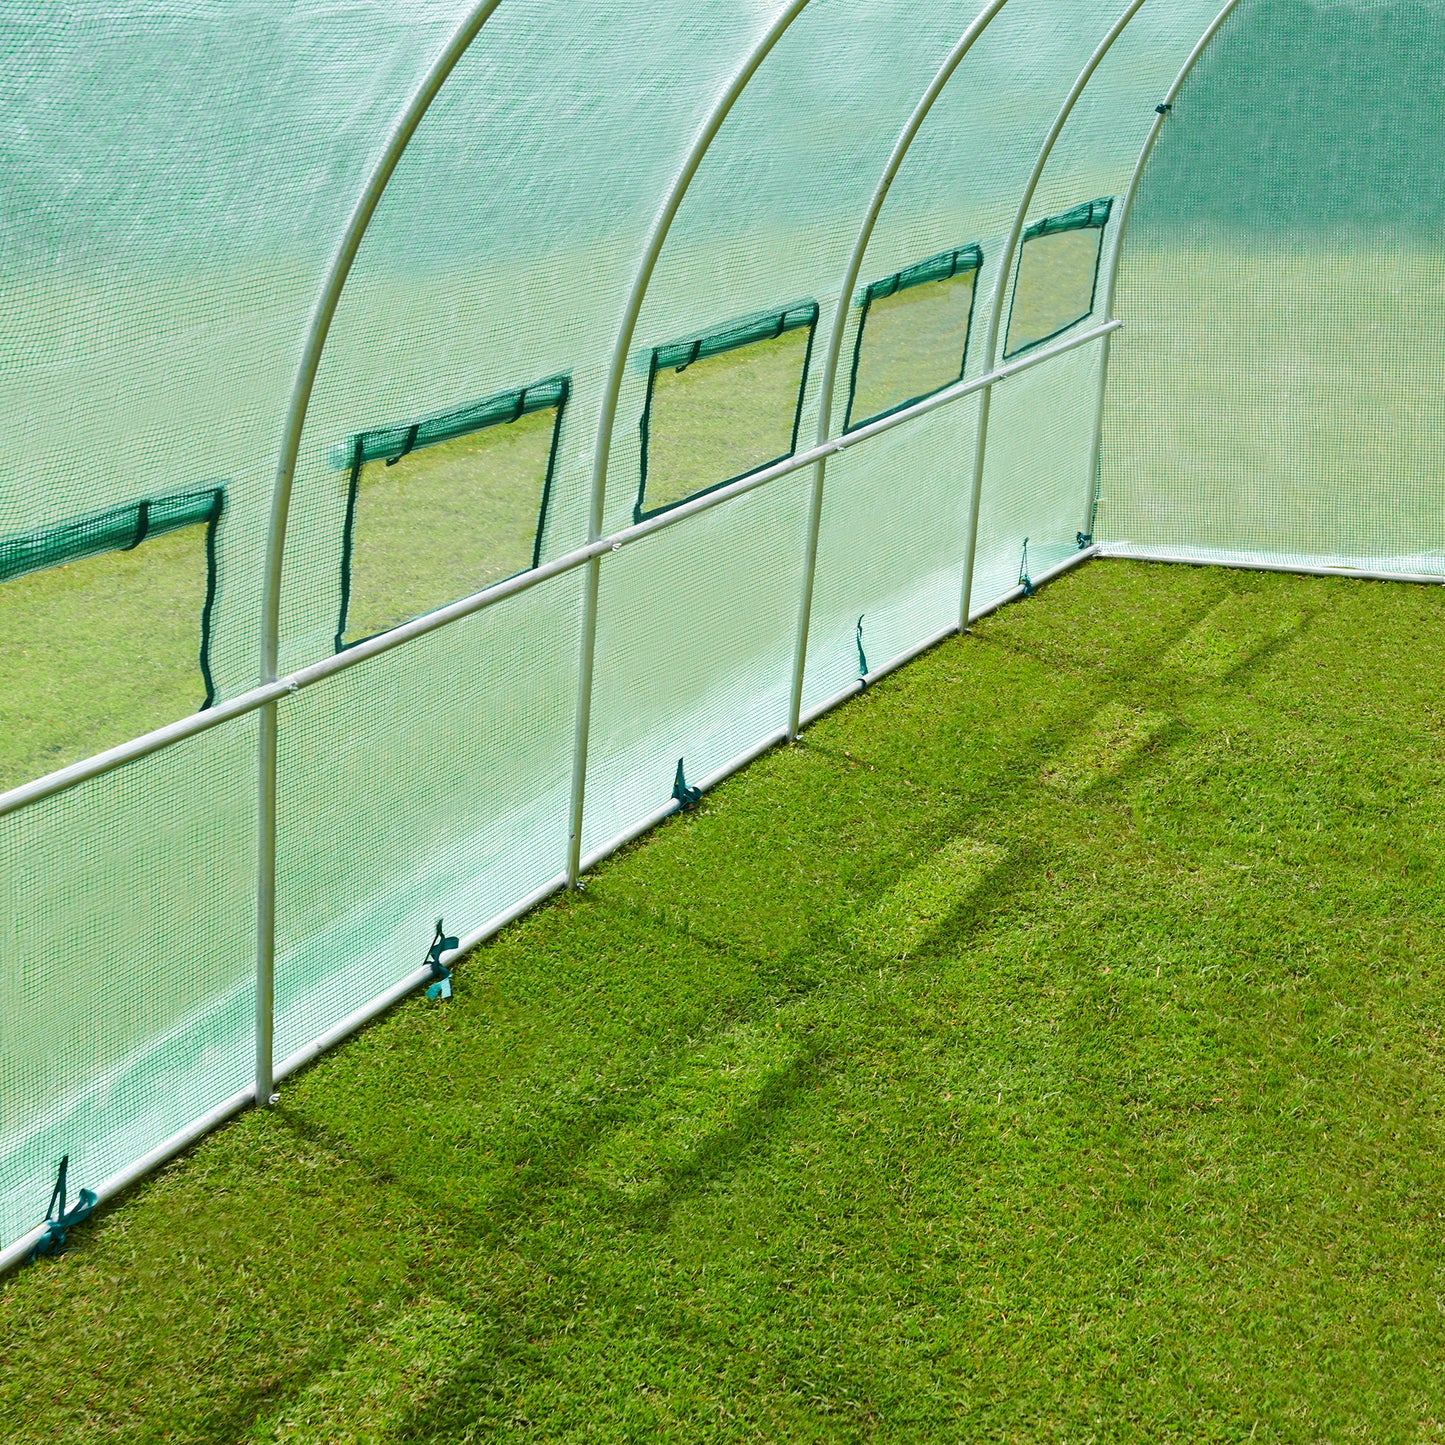 6m Replacement Polytunnel Greenhouse Cover - Zip Door